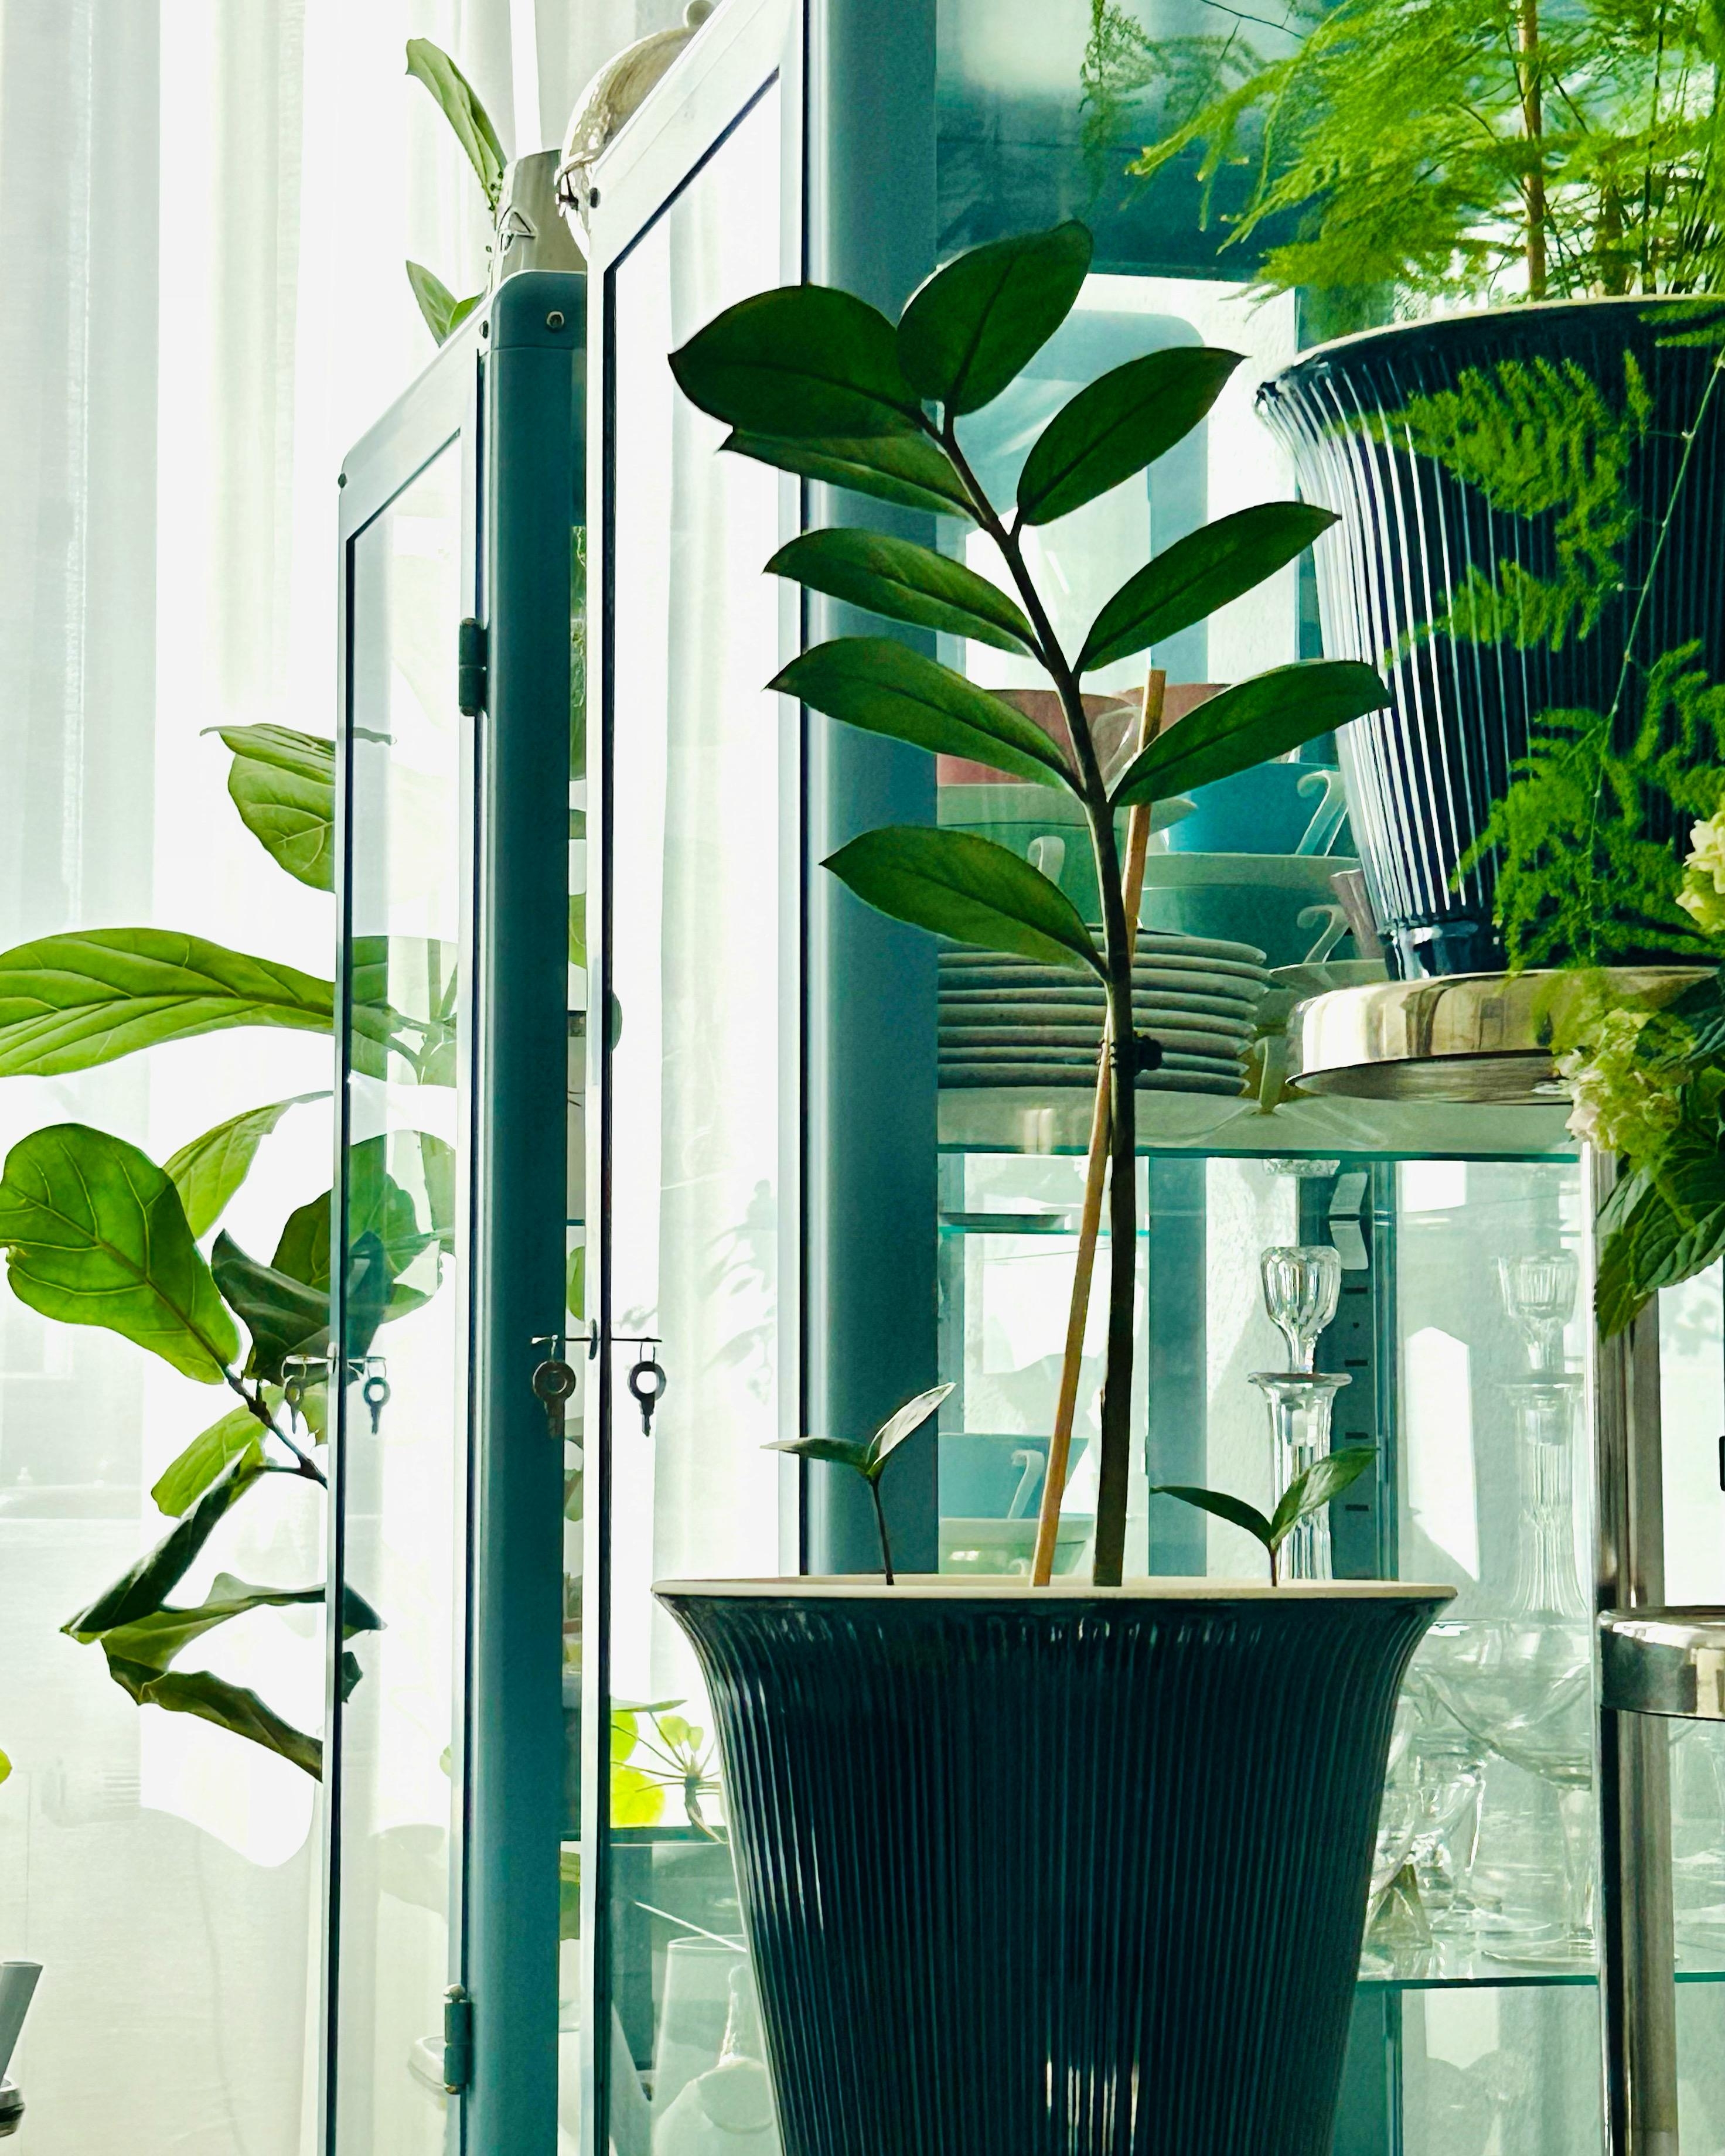 #pflanzenliebe #ikeafabrikör #vitrinenliebe
Ich mag Pflanzen. Ihre Farben harmonieren mit dem Graublau der Ikea Vitrinen. 